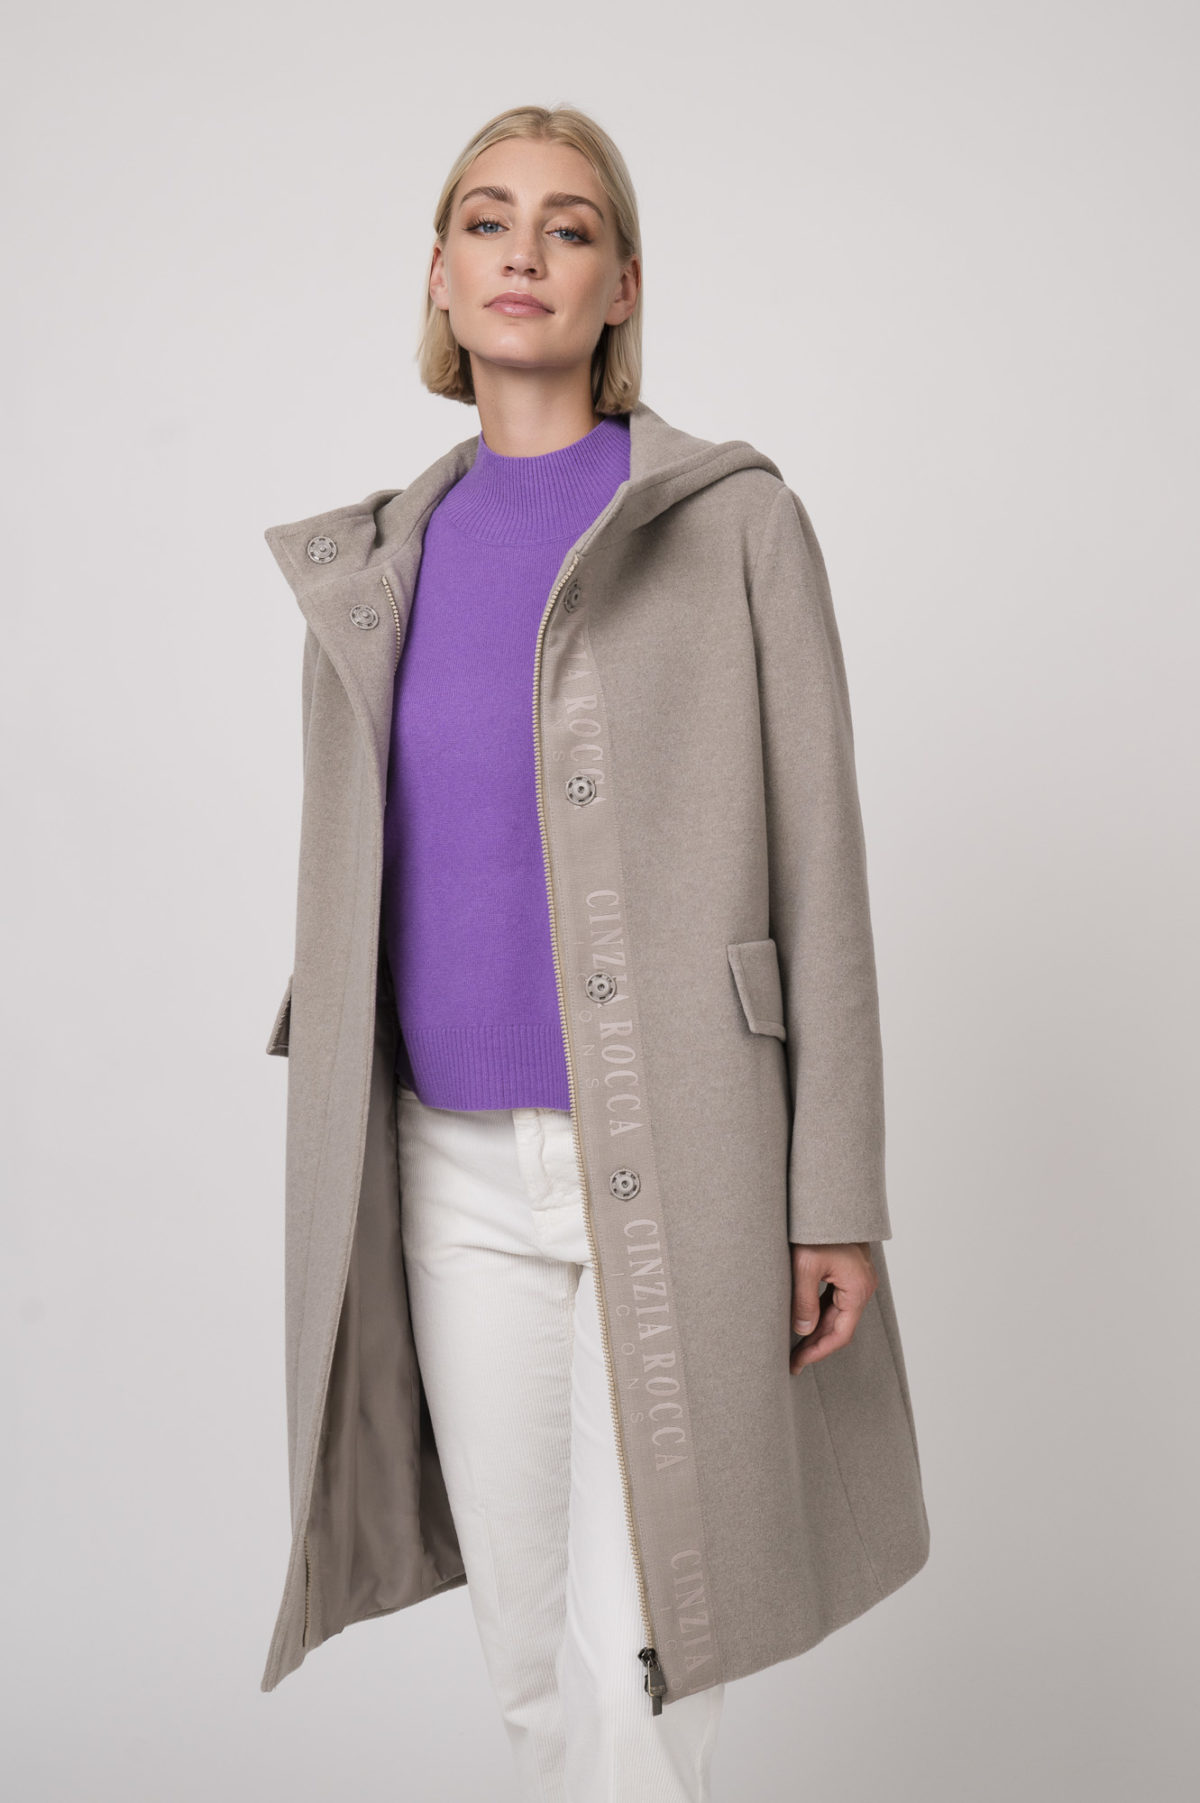 Mantel der Marke Cinzia Rocca, Pullover der Marke Repeat Cashmere, Hose der Marke Closed